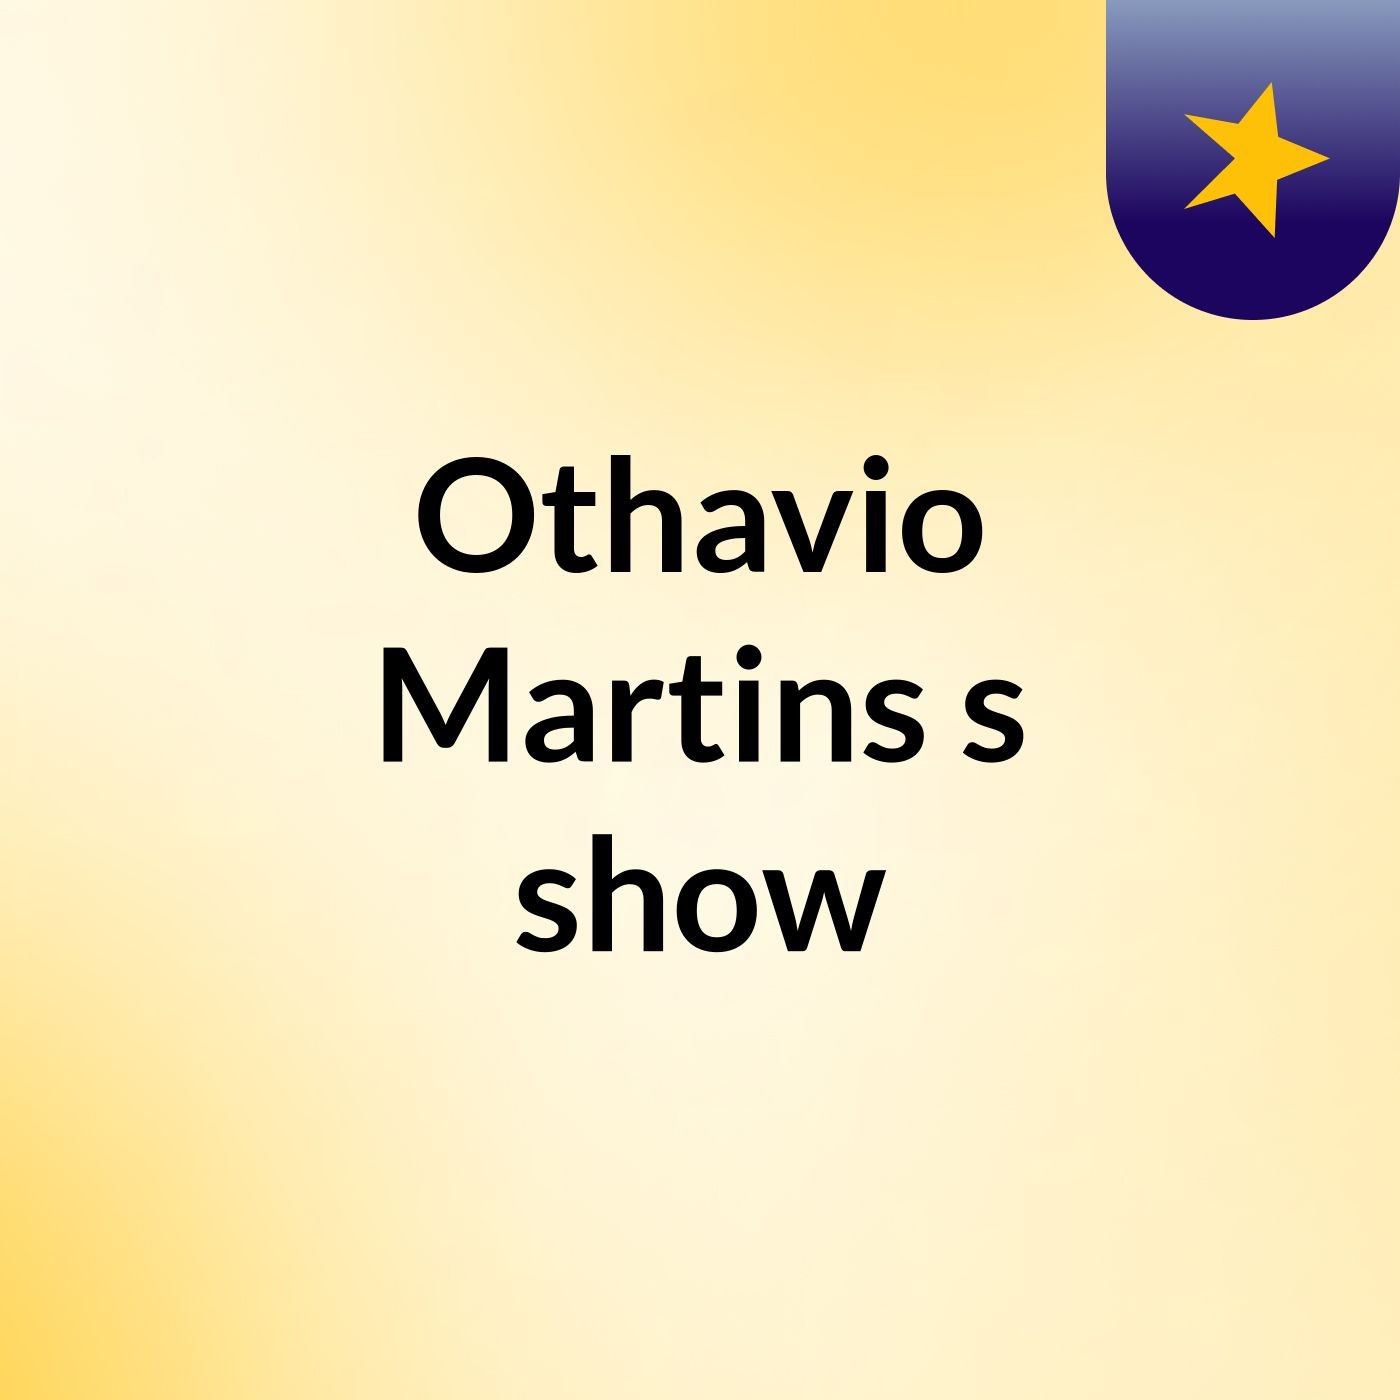 Othavio Martins's show